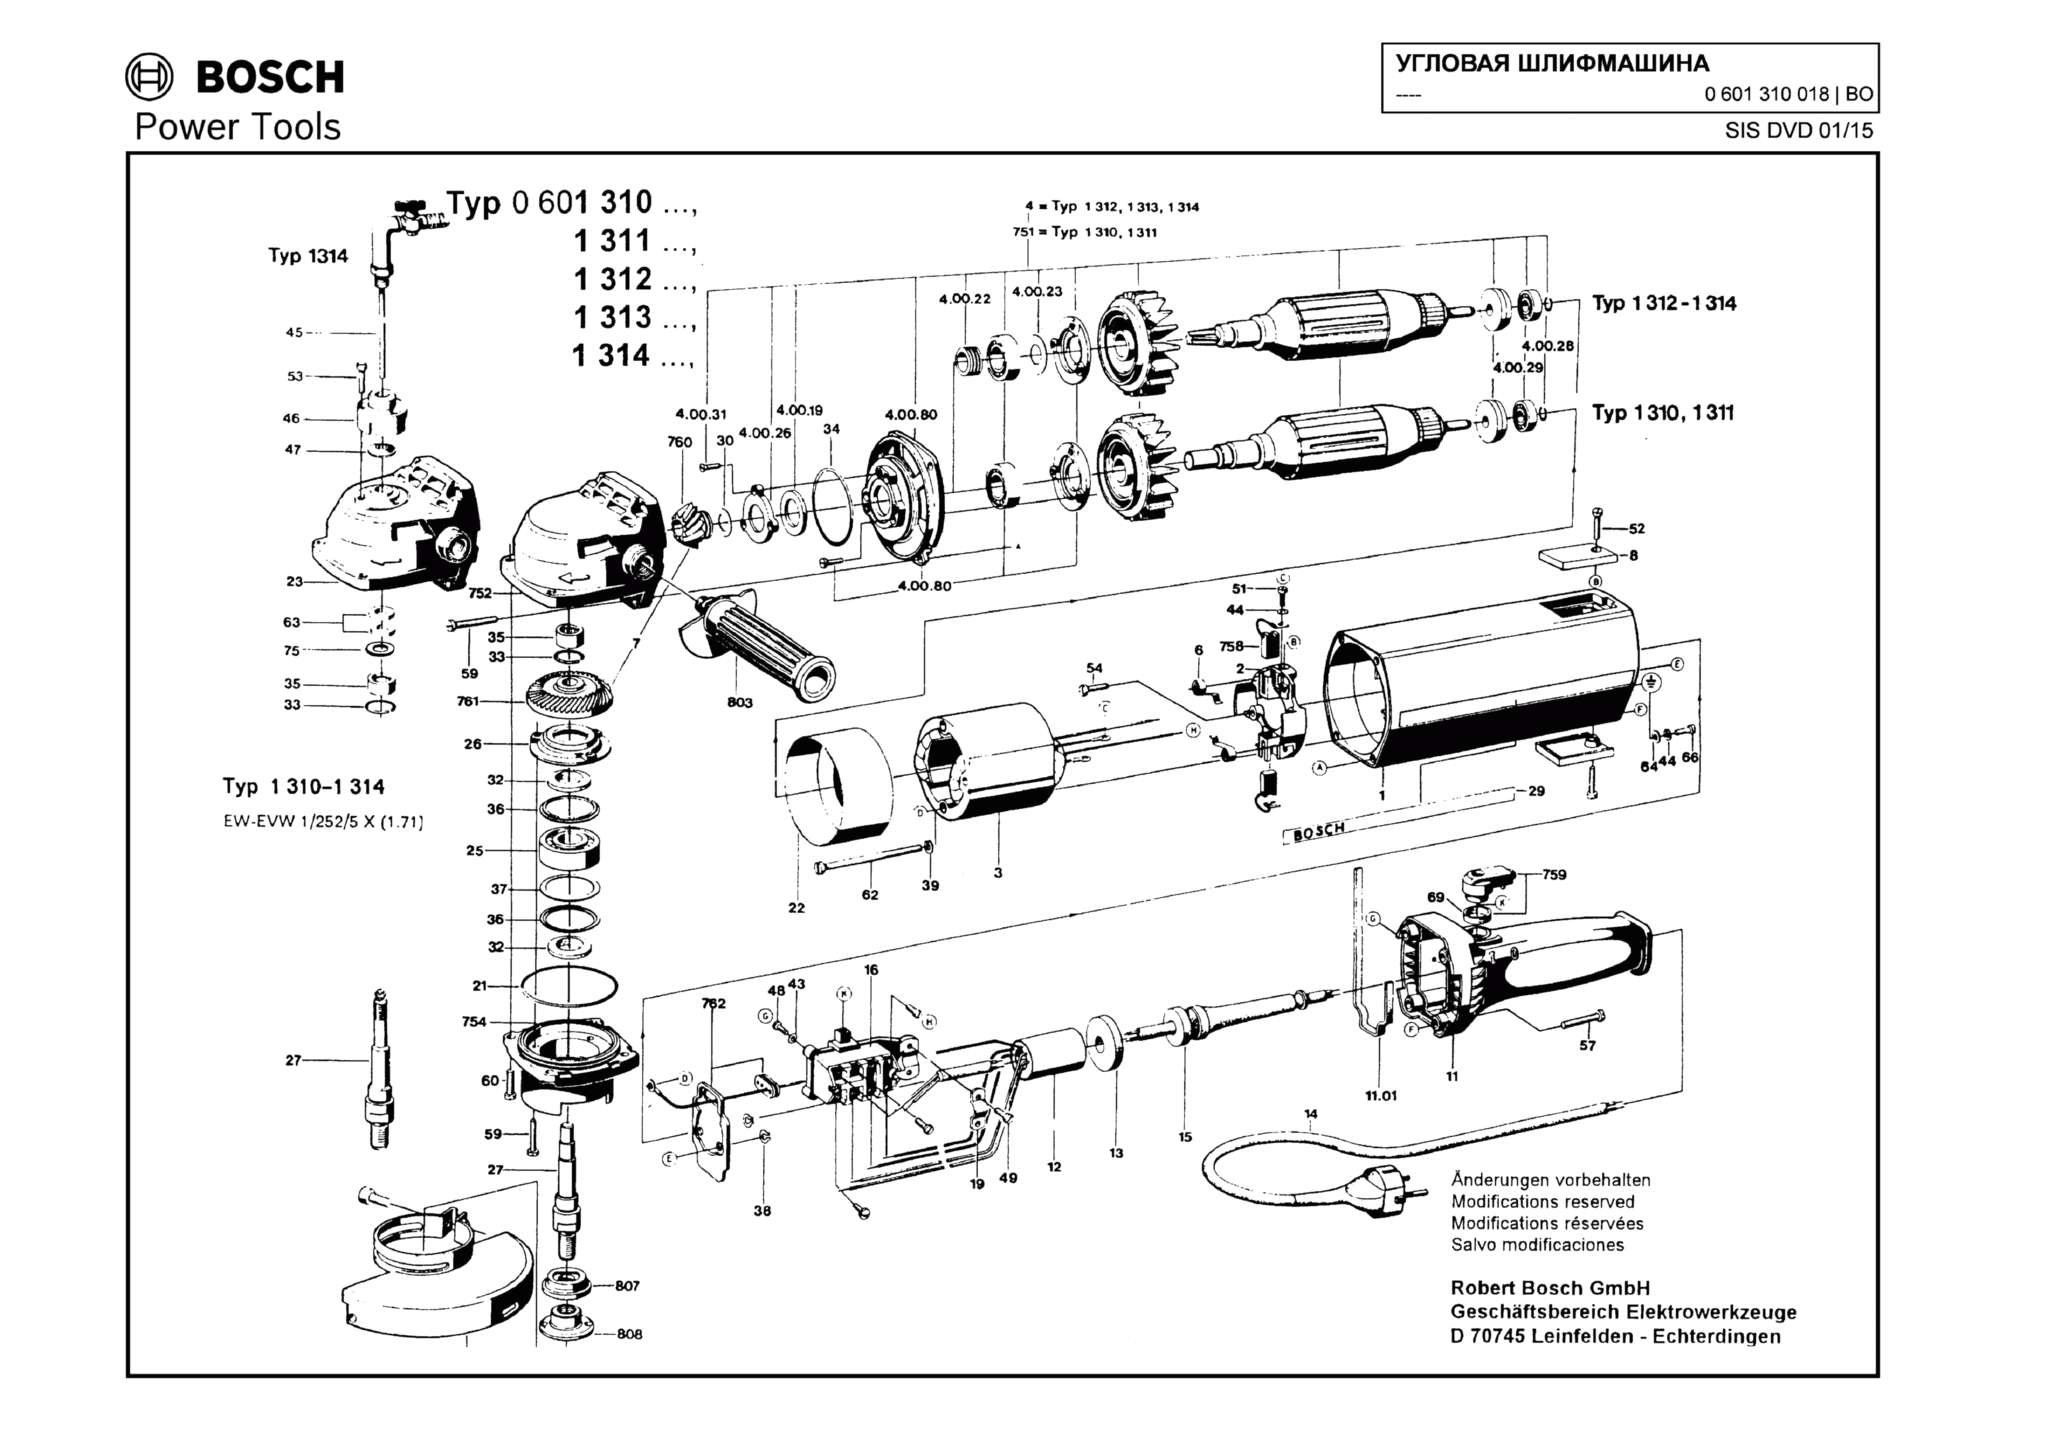 Запчасти, схема и деталировка Bosch (ТИП 0601310018)